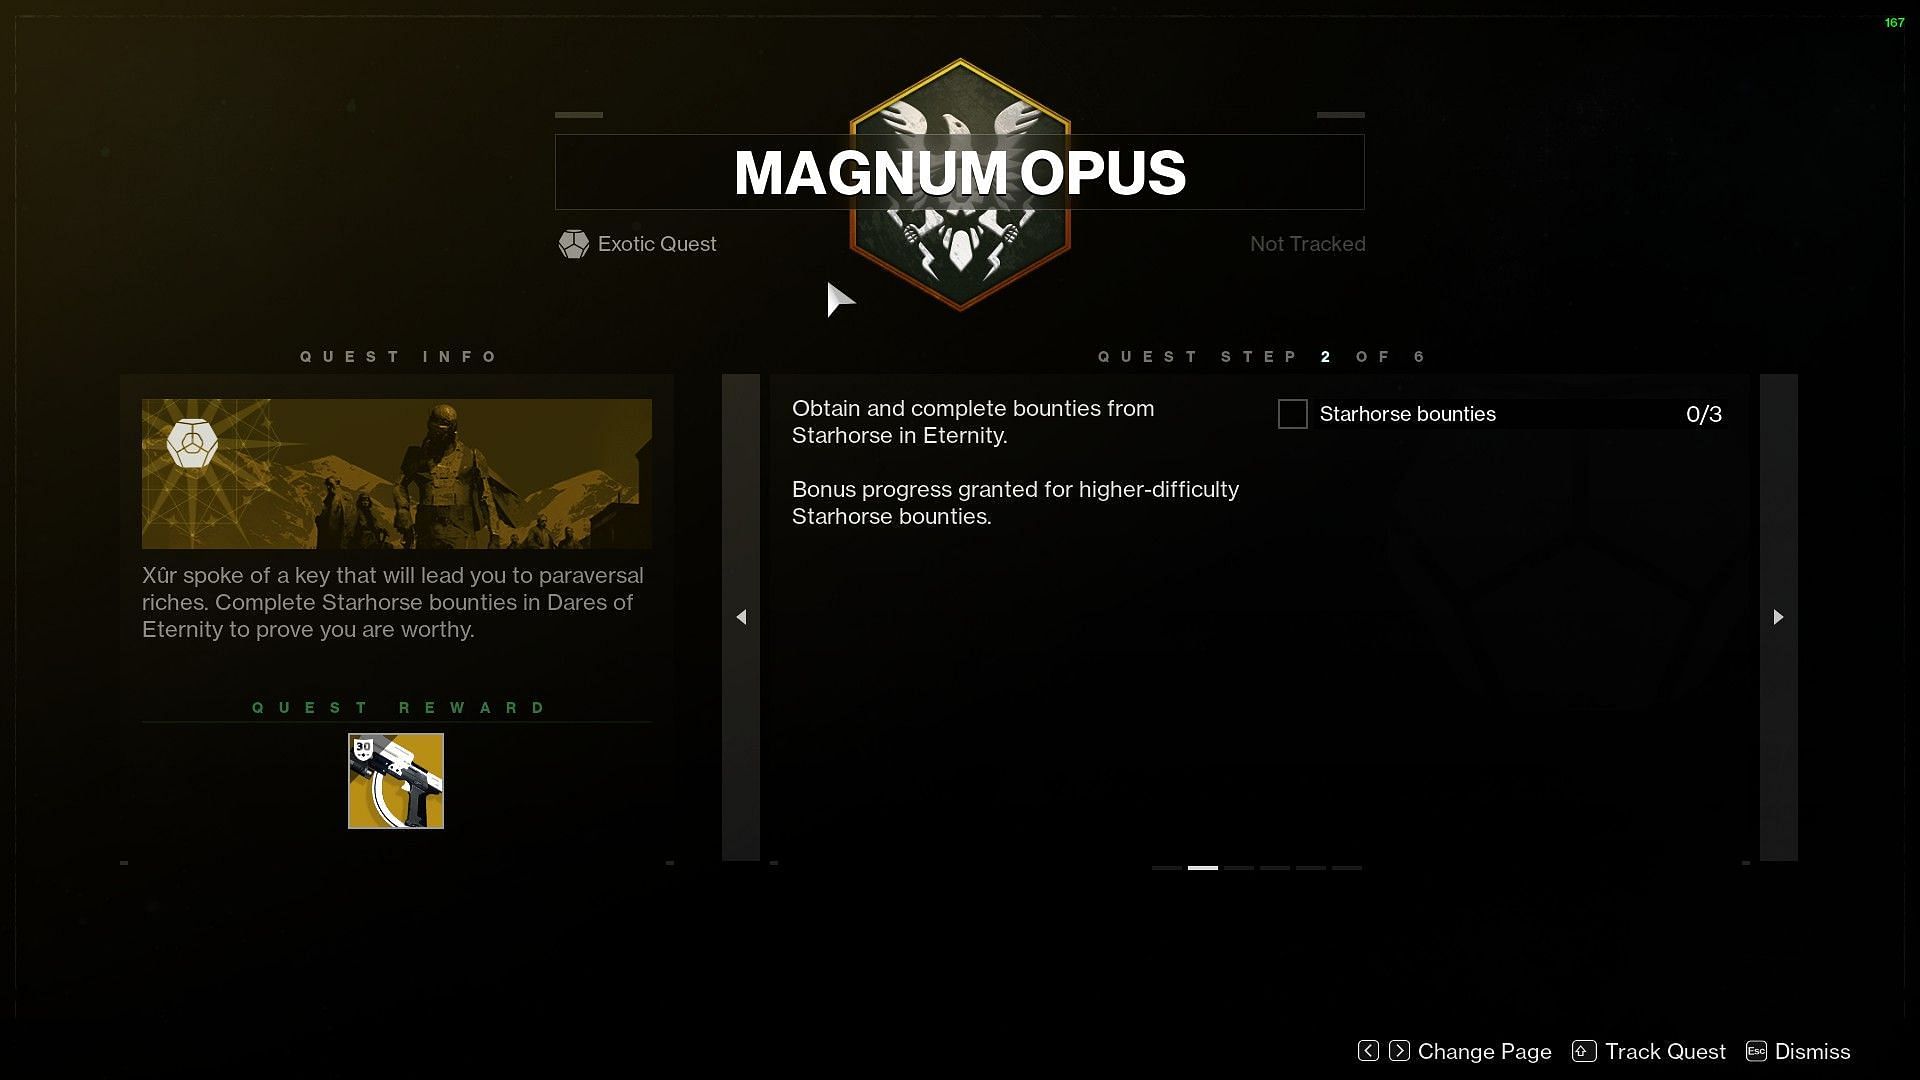 Magnum Opus Quest second step (Image via Bungie)